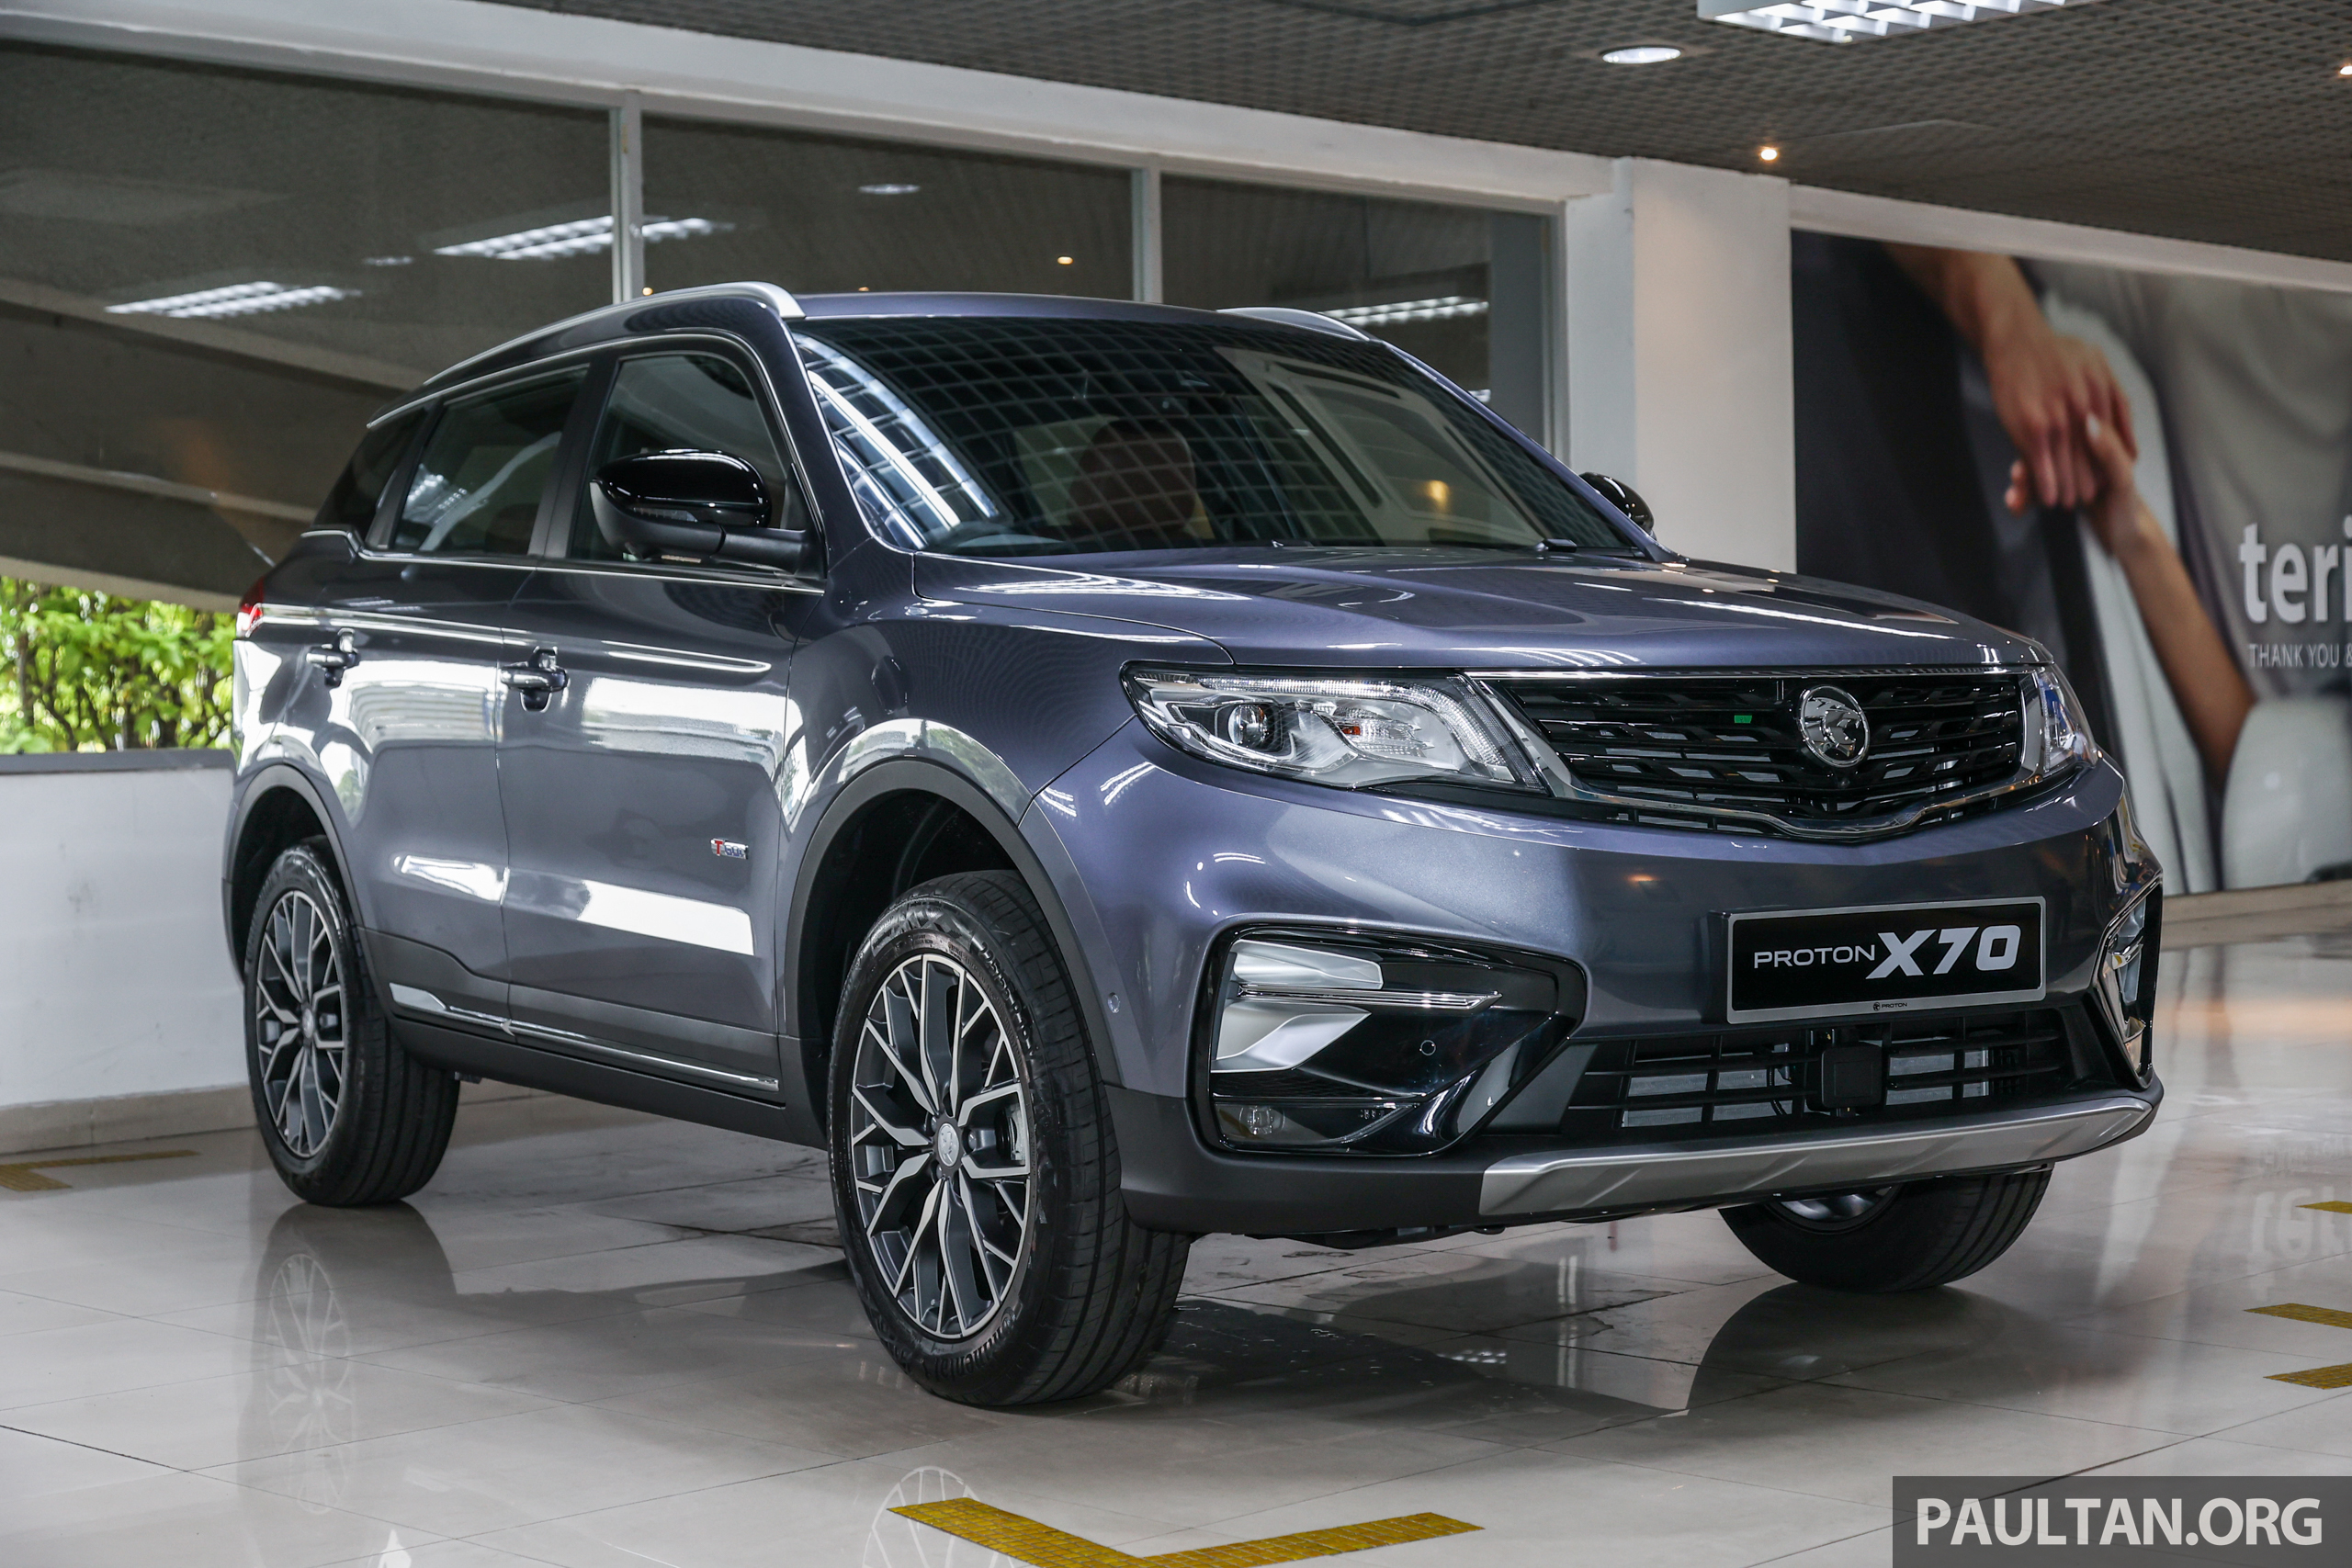 Proton 公布恢复SST后的新车价格，X70 最高等级涨RM7k